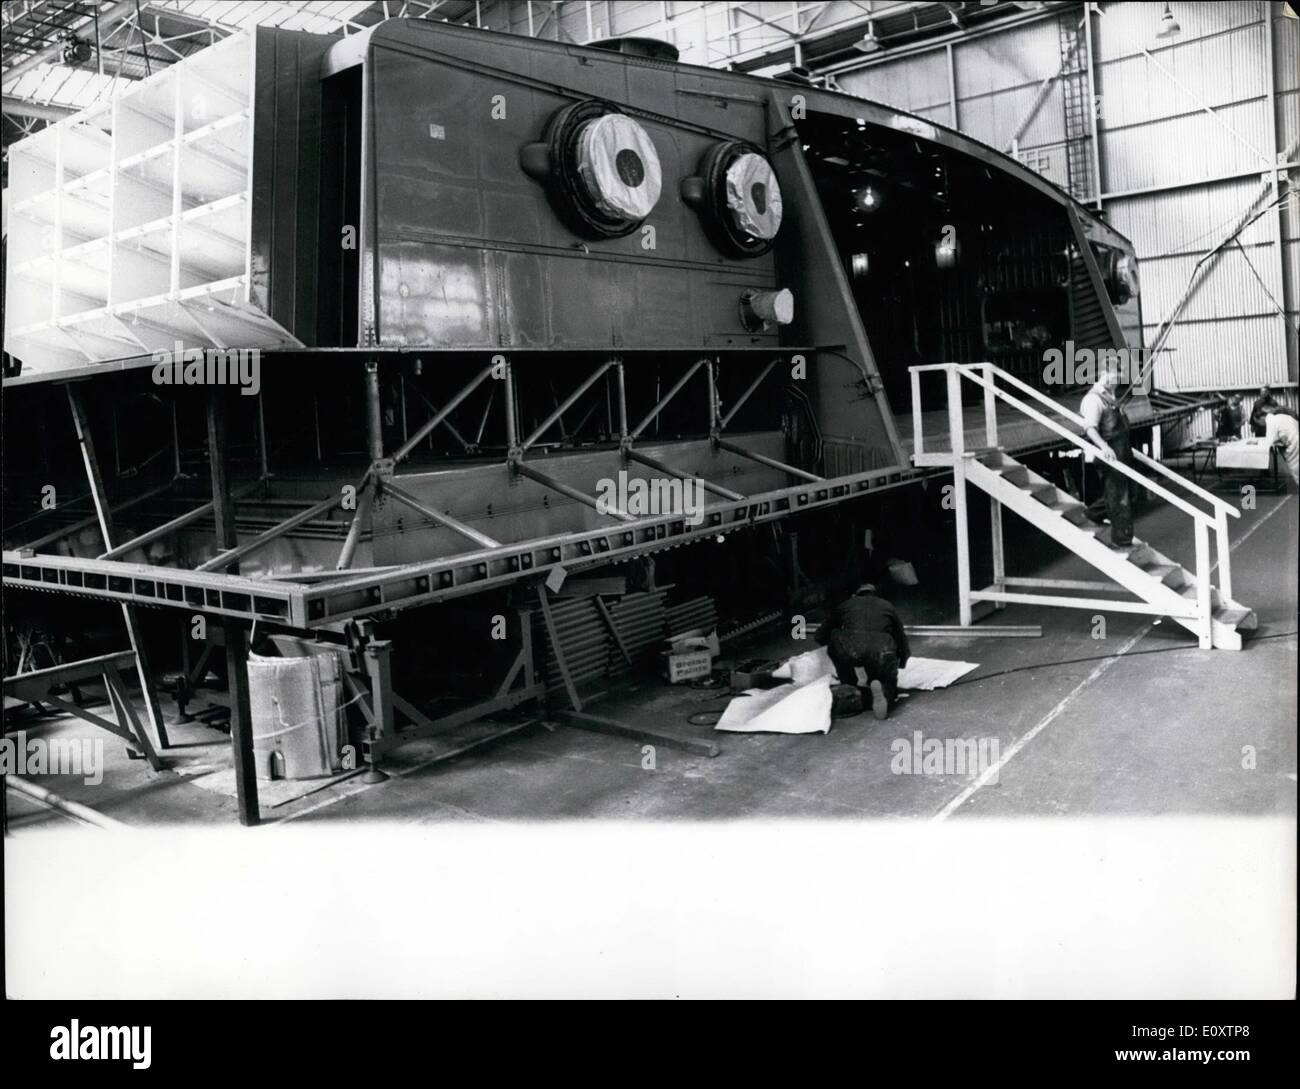 Septembre 09, 1967 - Un aéroglisseur géant est presque terminée : 4 165 tonnes SR.N4 aéroglisseur, un passager/car-ferry rapide conçu pour des opérations sur ''ouvert'' de la mer, les ferries sont à divers stades de la production à l'usine de British Hovercraft Corporation à Cowes. L'un peut être modifiée pour s'adapter à l'opérateur et ses exigences. Les modèles typiques : tous les passagers transportant 500 personnes assises sur 700/800 passagers de banlieue sur des liaisons courtes et un passager/version automobile 256 personnes assises et 30 voitures. De plus, SR. N4 peut être utilisé pour transporter des marchandises Banque D'Images